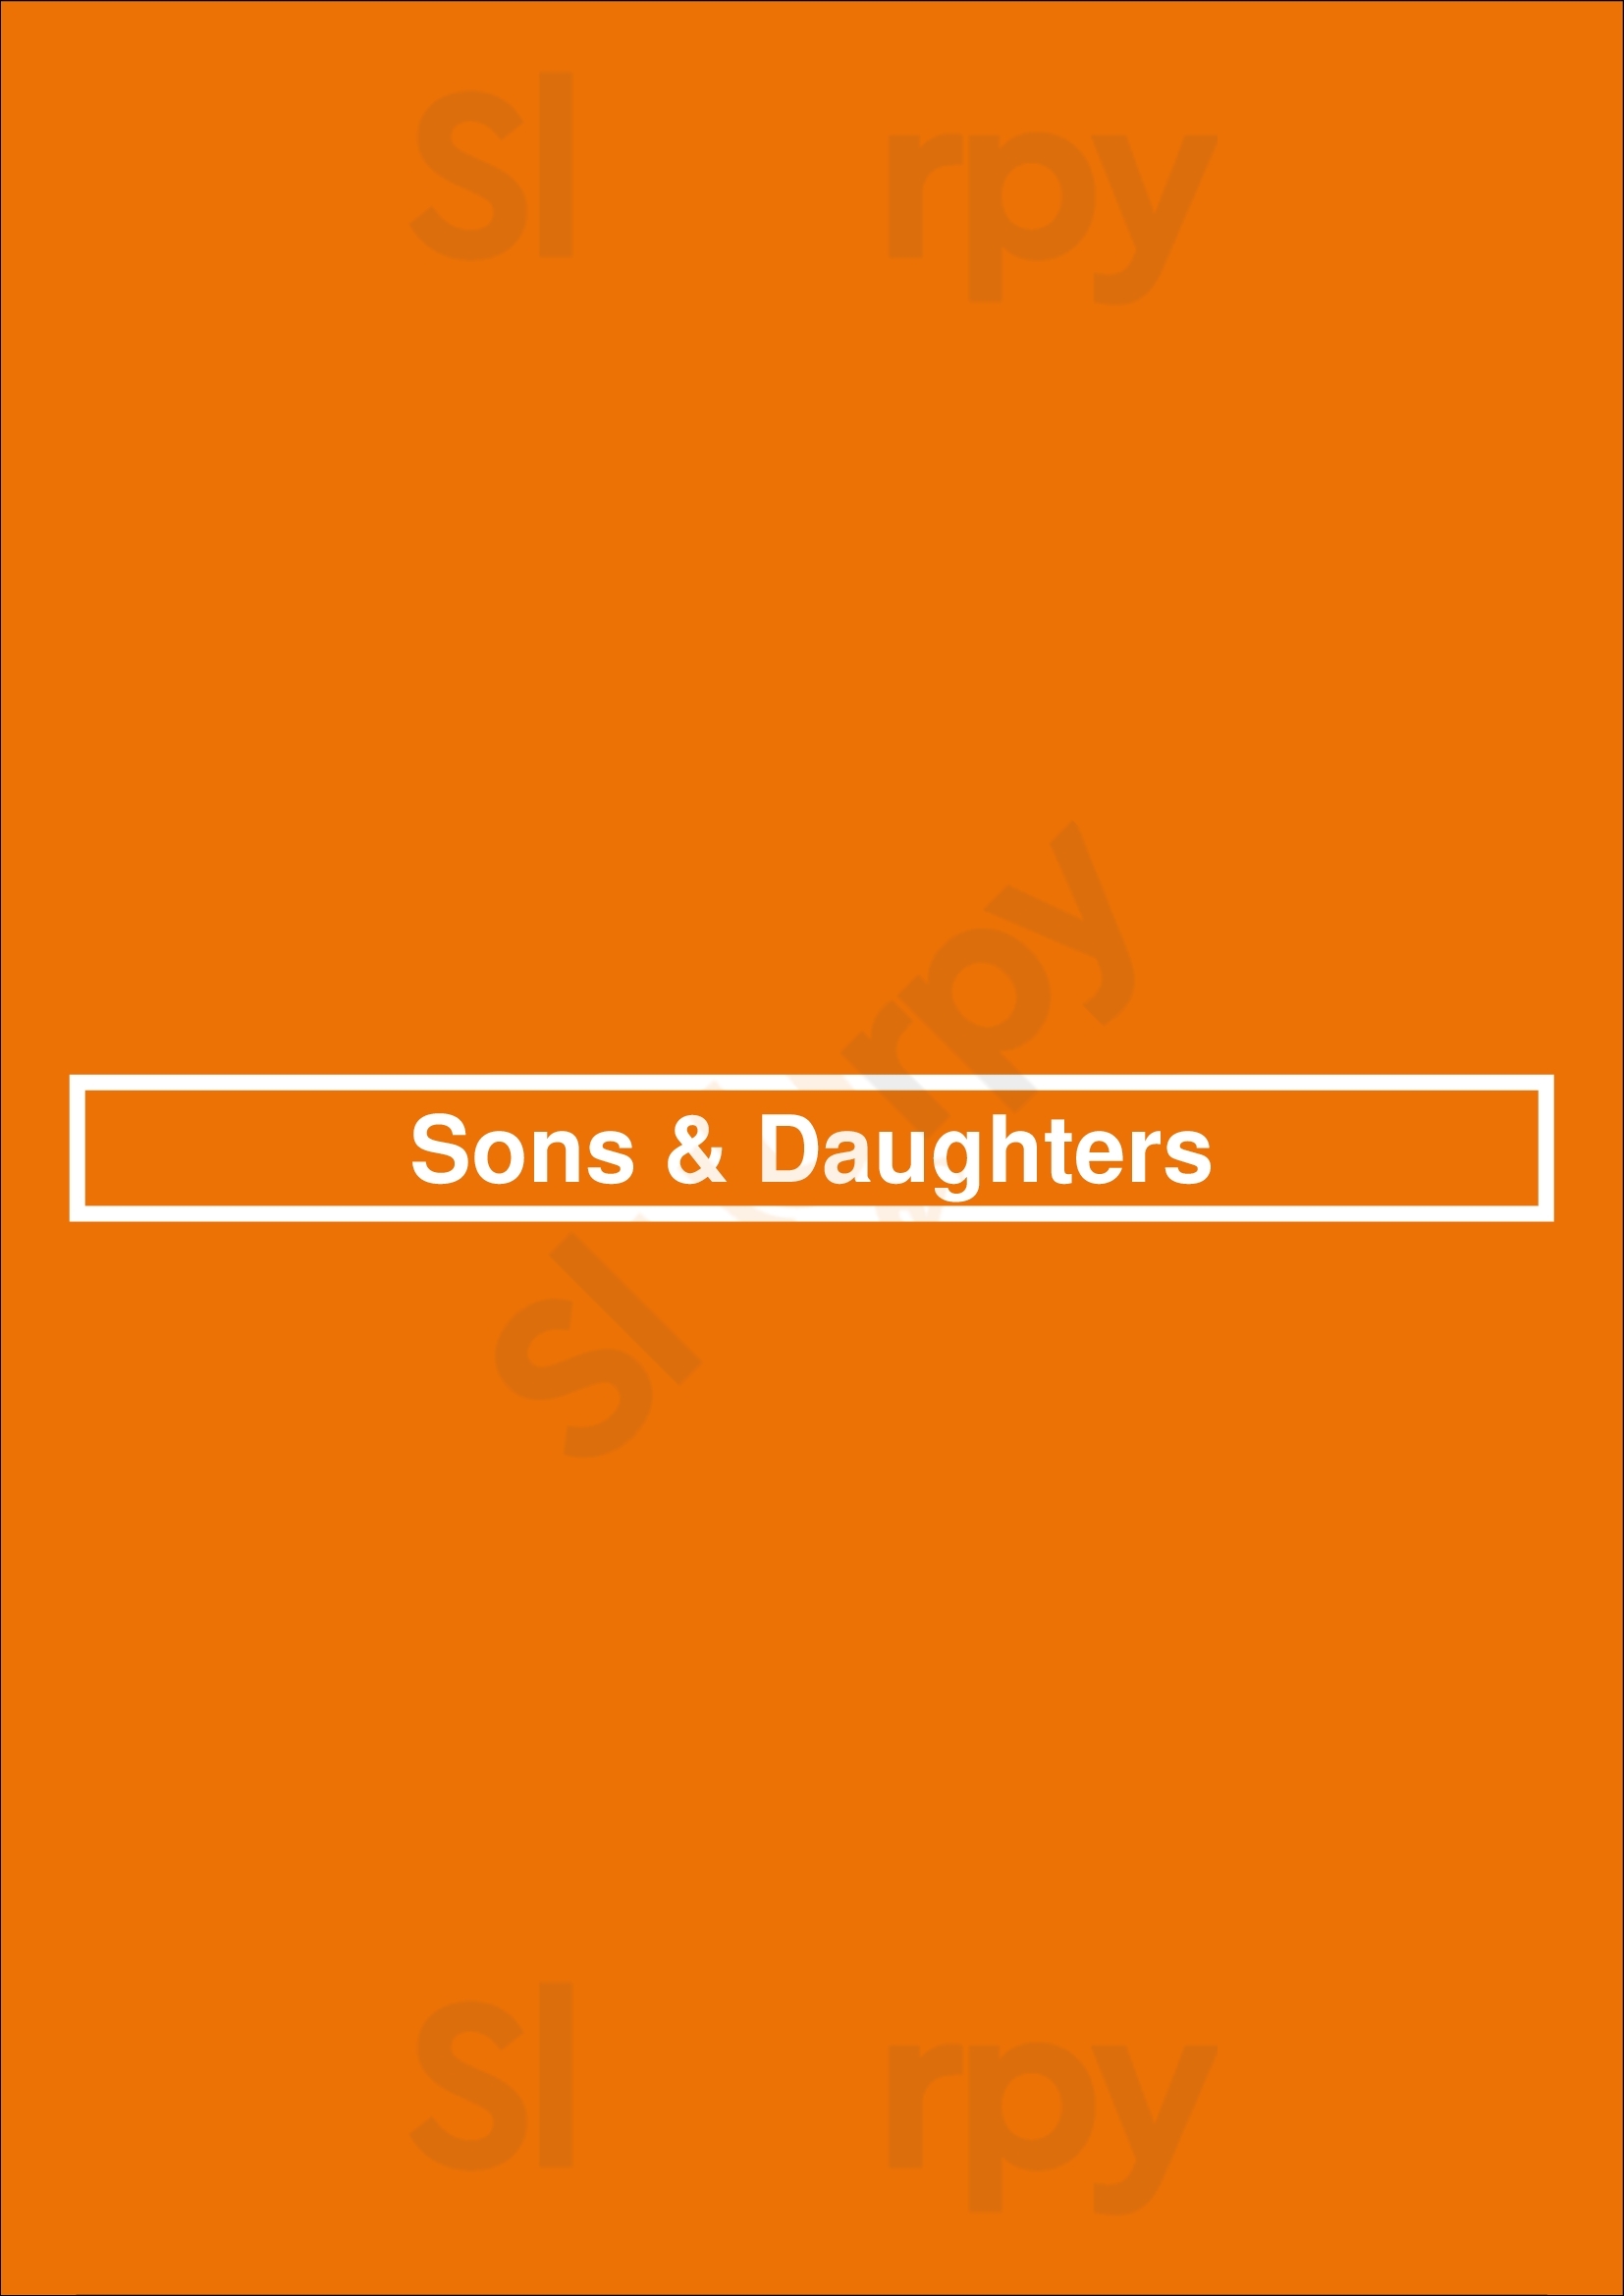 Sons & Daughters San Francisco Menu - 1